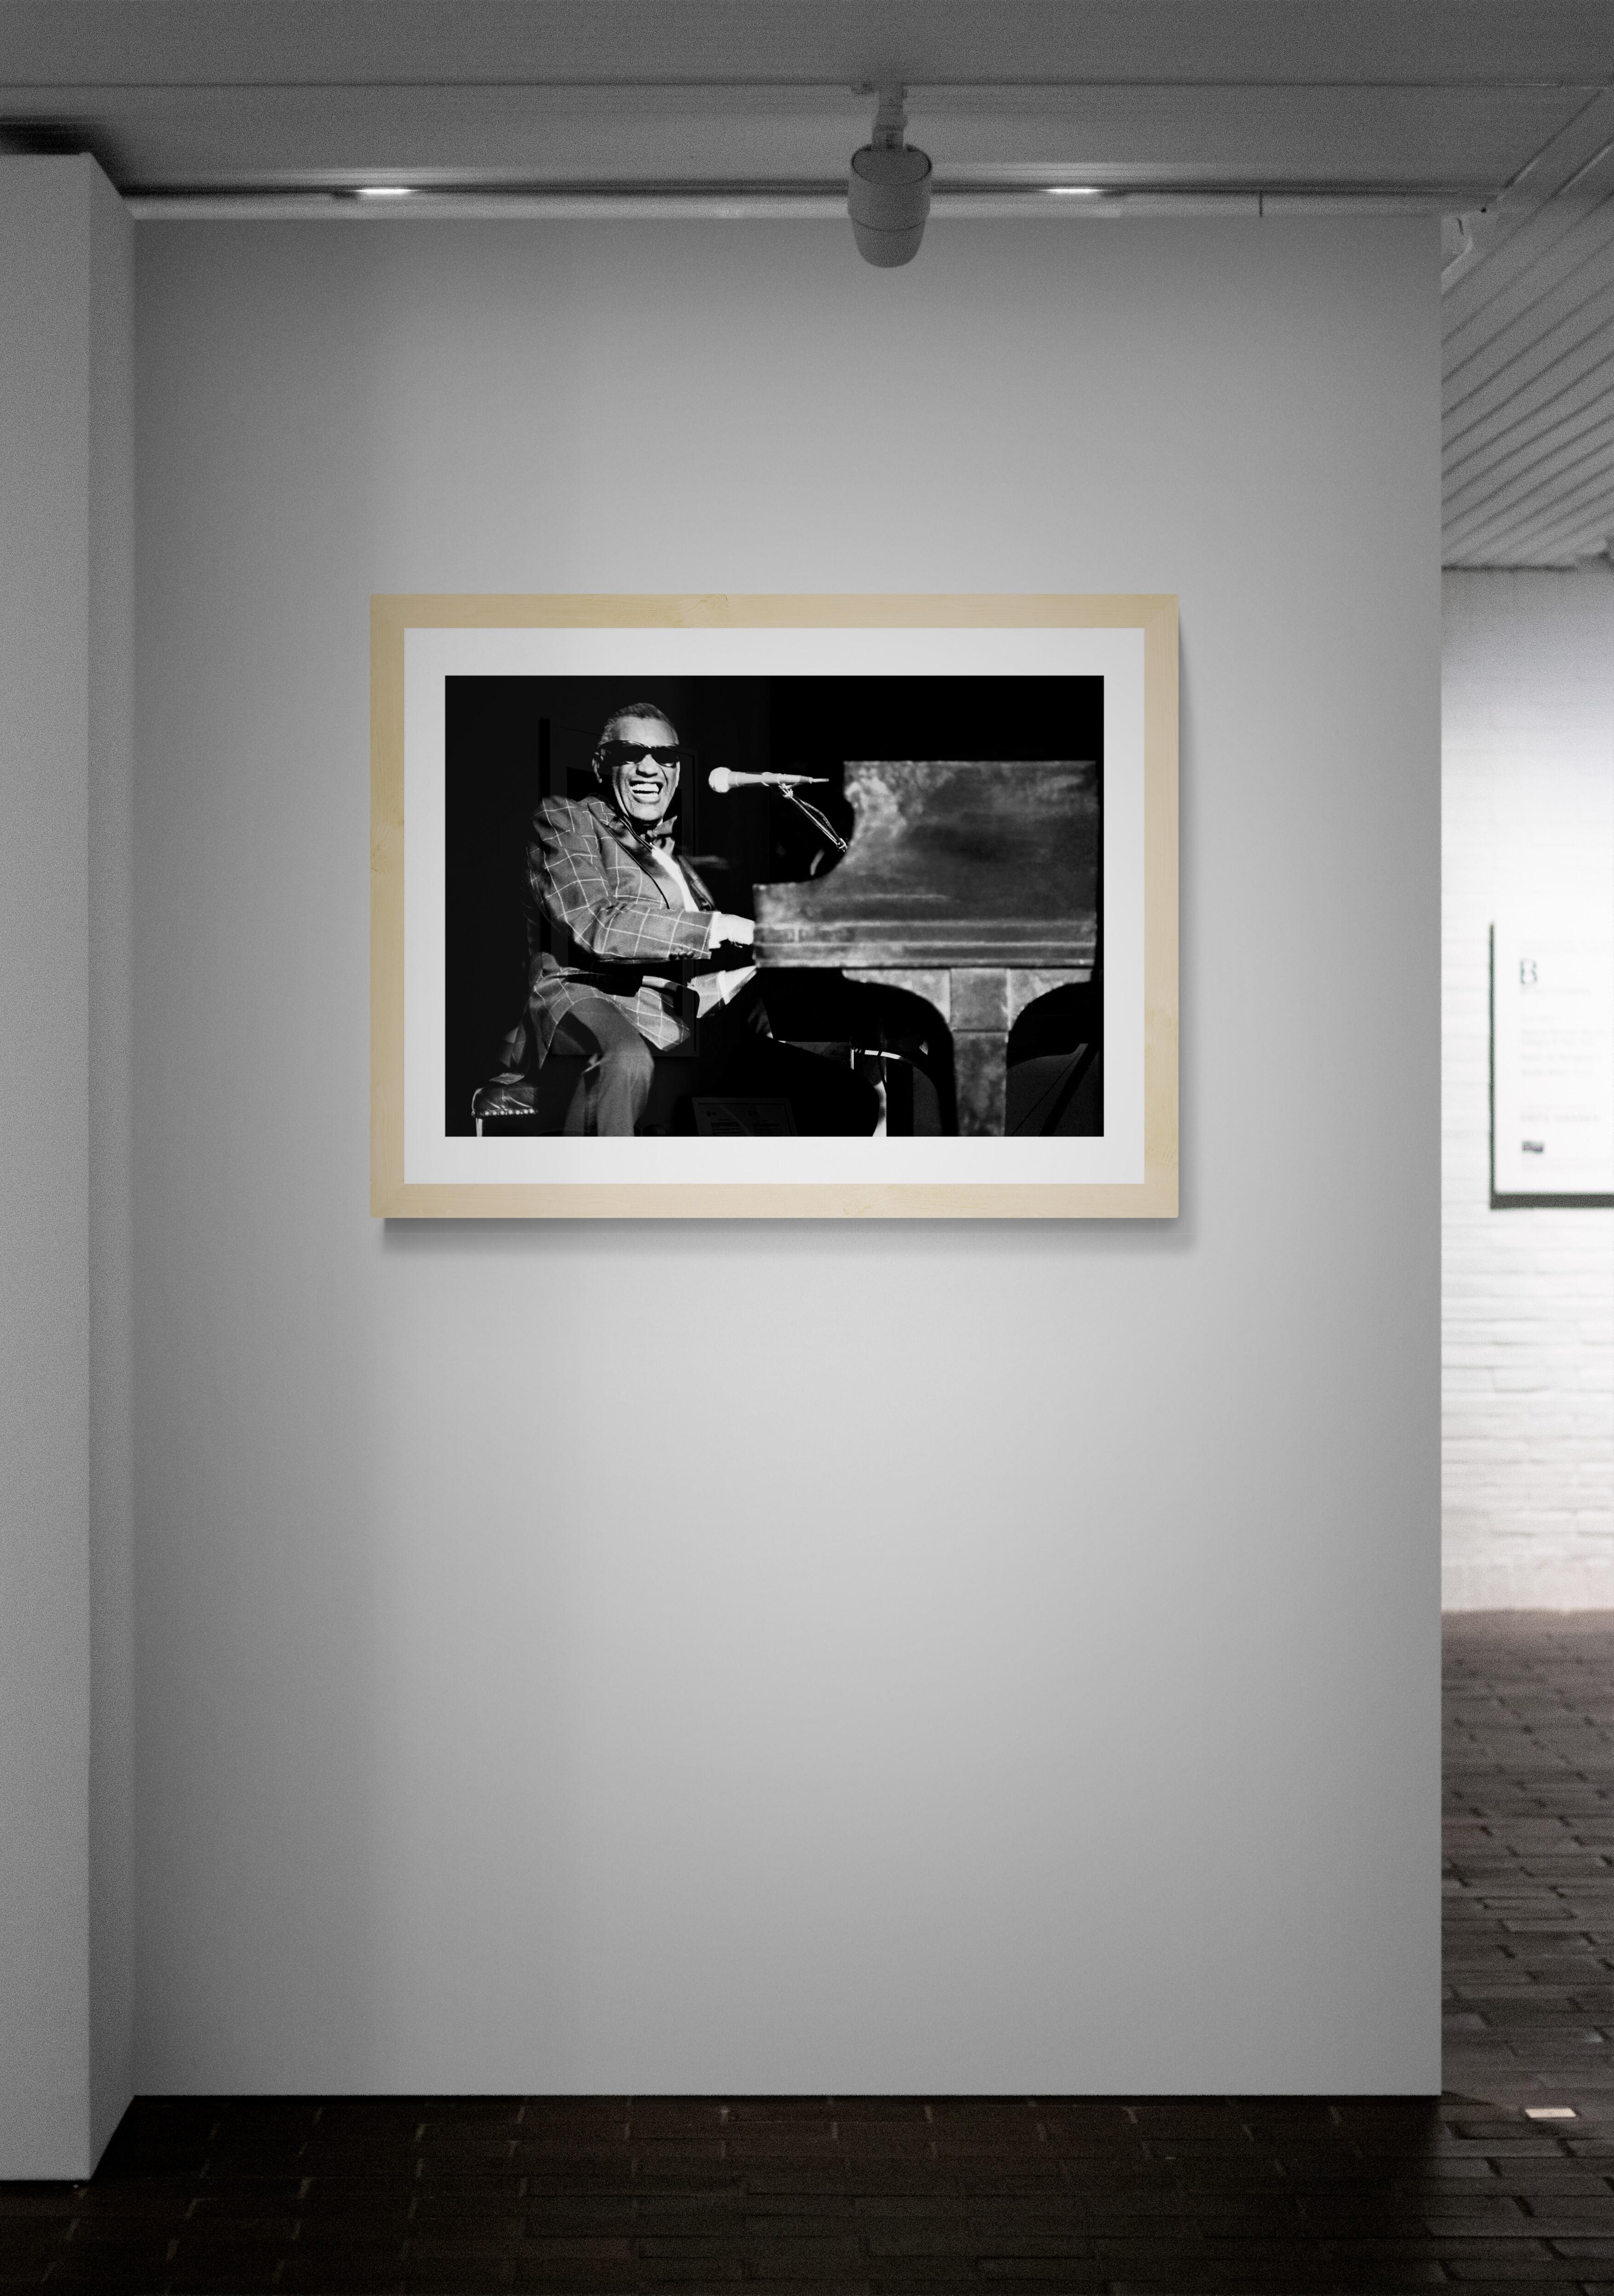 Titel: Ray Charles #2 Foto
Künstler: Richard E. Aaron
Nachlass-Edition: Handnummeriert mit Nachlassstempel im Rand, Signaturstempel auf der Rückseite, Pigmentdruck auf Hahnemühle Photo Rag Pearl, 100% Baumwollpapier, Kunstdruckpapier. Autorisierte